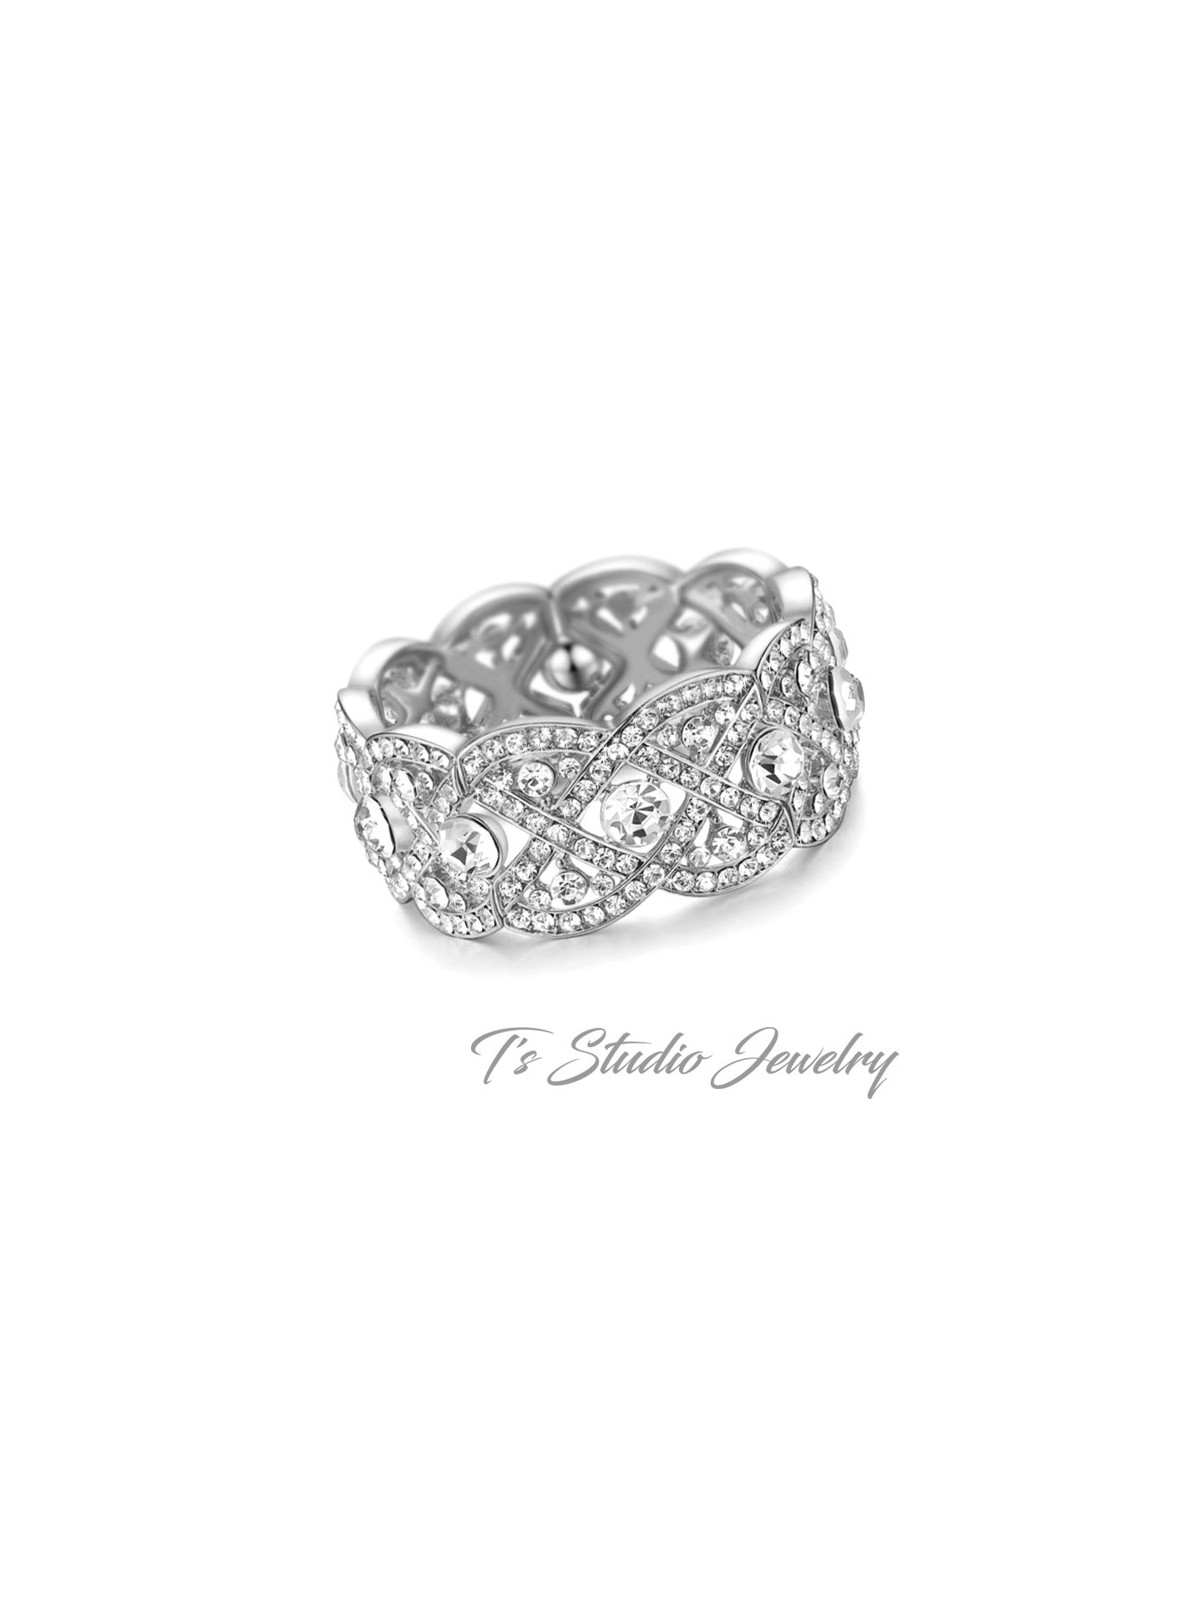 Silver Crystal Rhinestone Bridal Cuff Bracelet